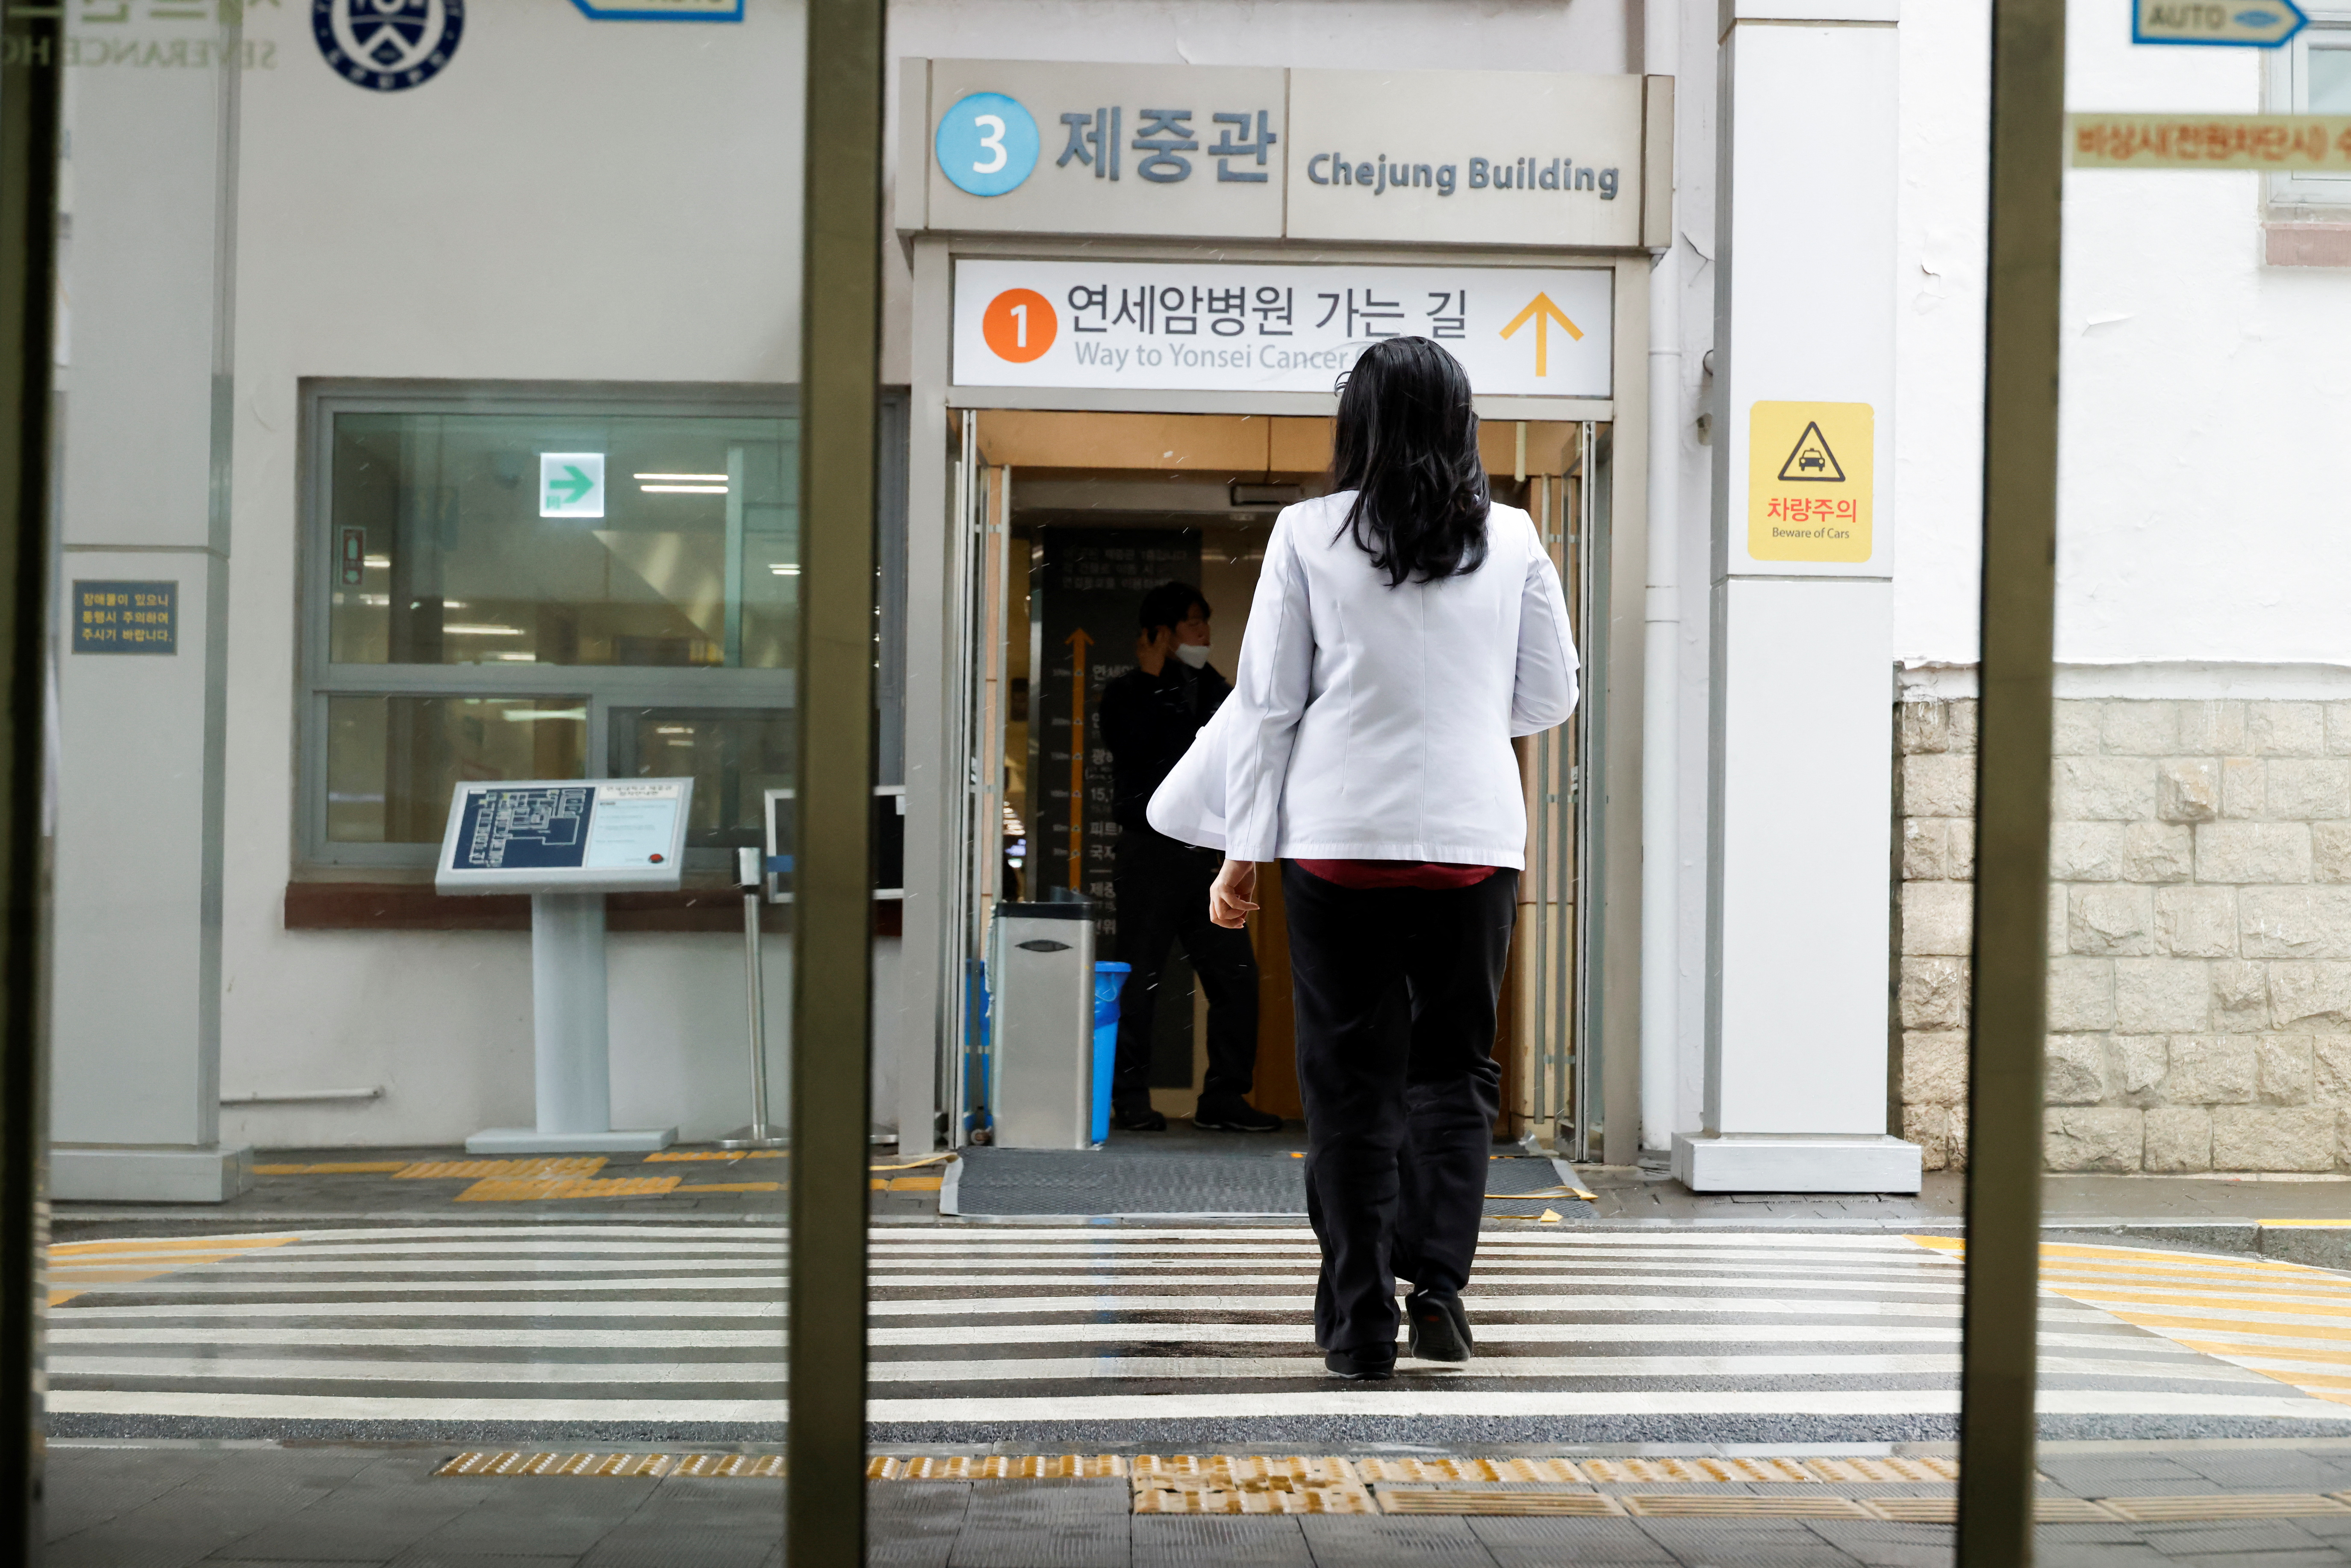 韓国、研修医スト受け看護師の医療処置代行を公認 | ロイター